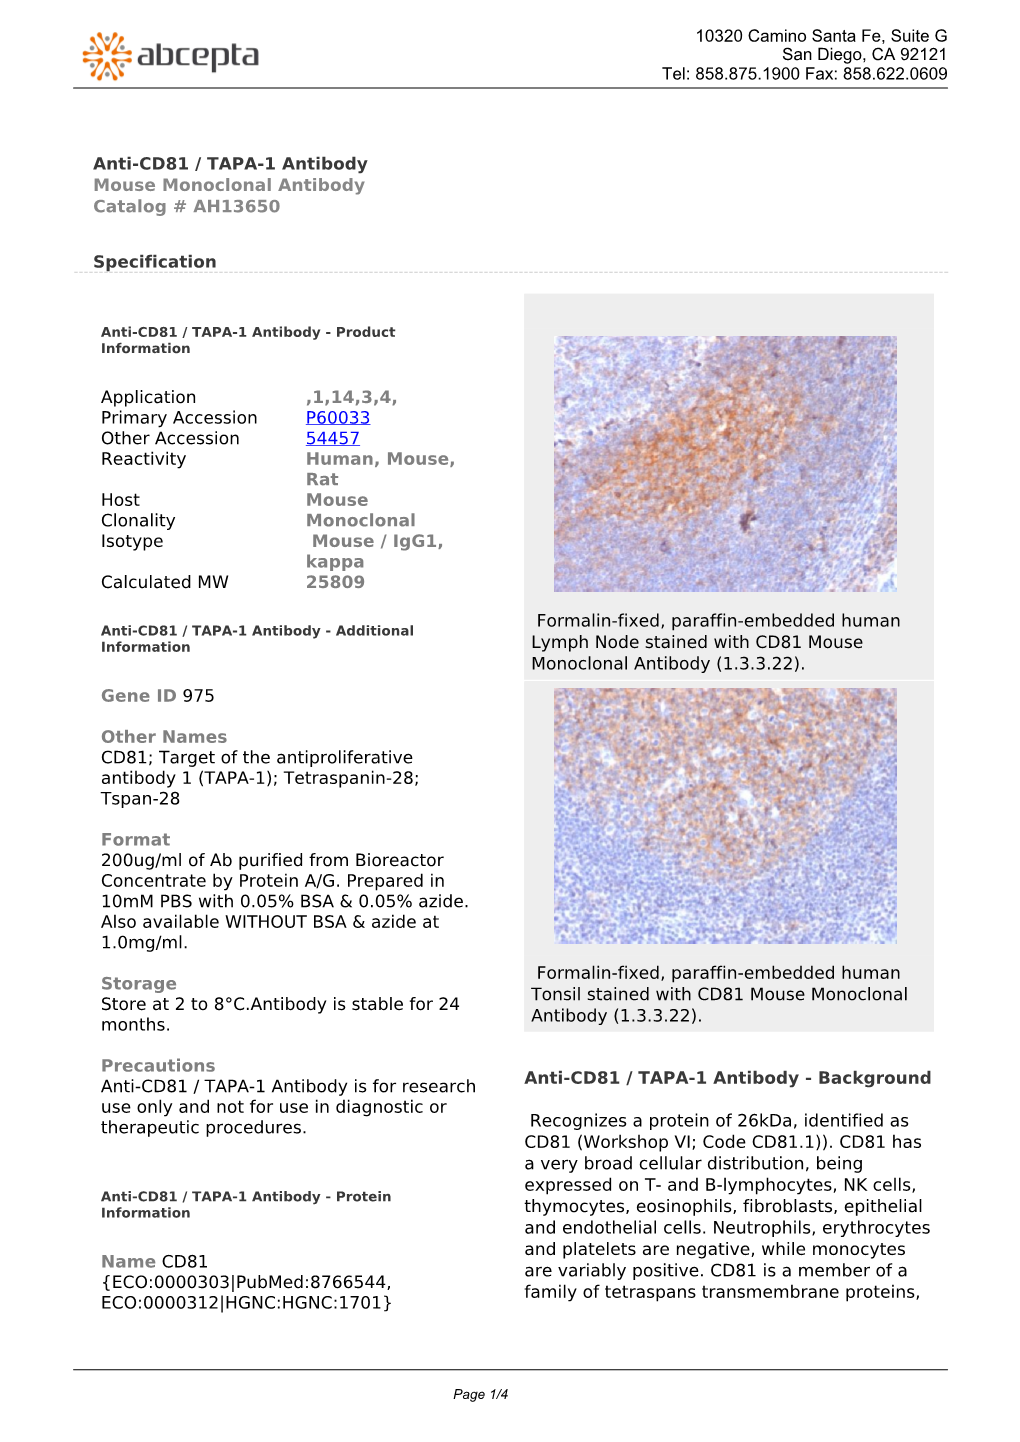 Anti-CD81 / TAPA-1 Antibody Mouse Monoclonal Antibody Catalog # AH13650